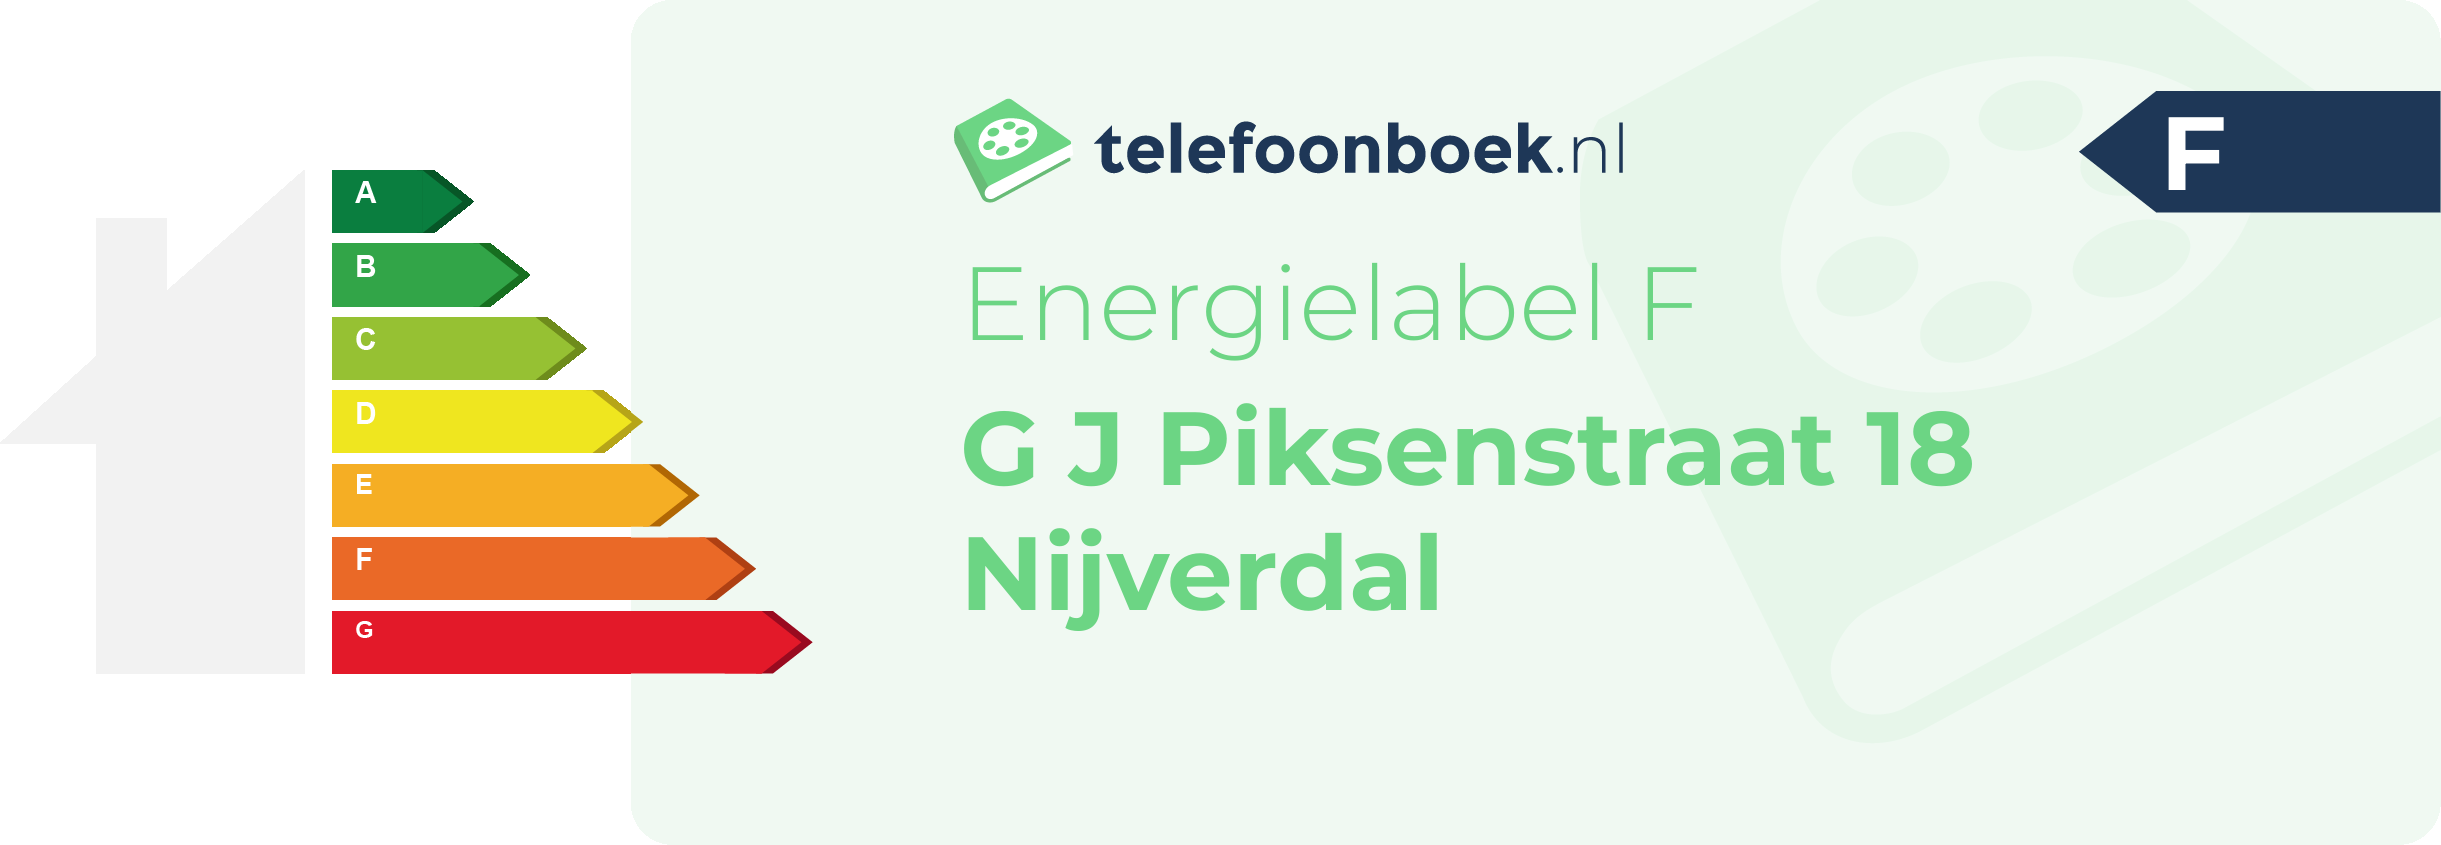 Energielabel G J Piksenstraat 18 Nijverdal